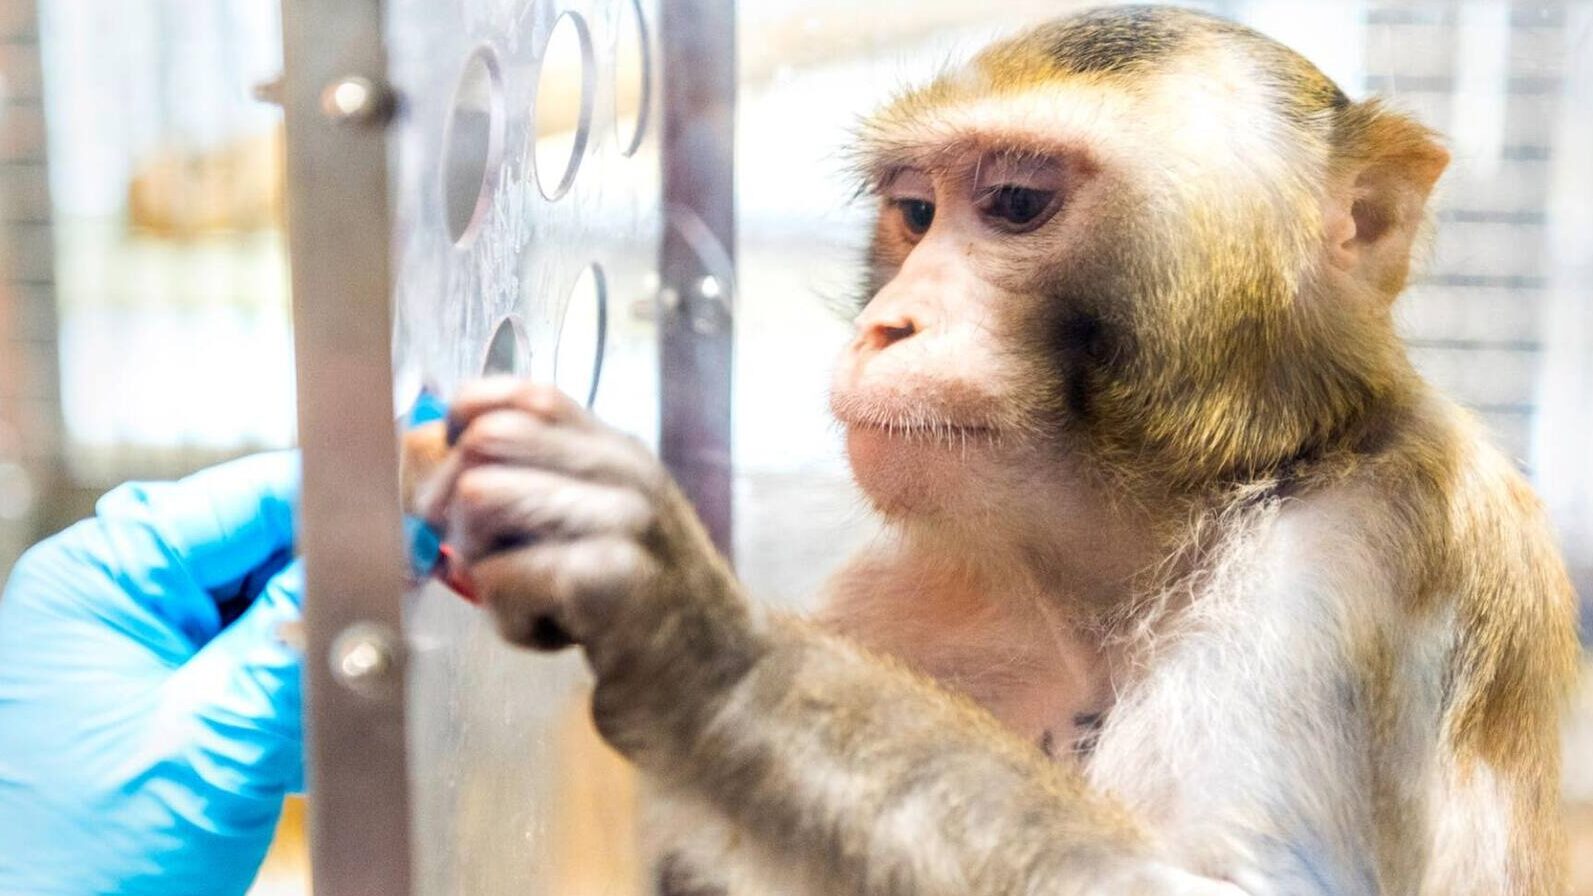 peau de singe : quelles sont les implications éthiques et médicales ?